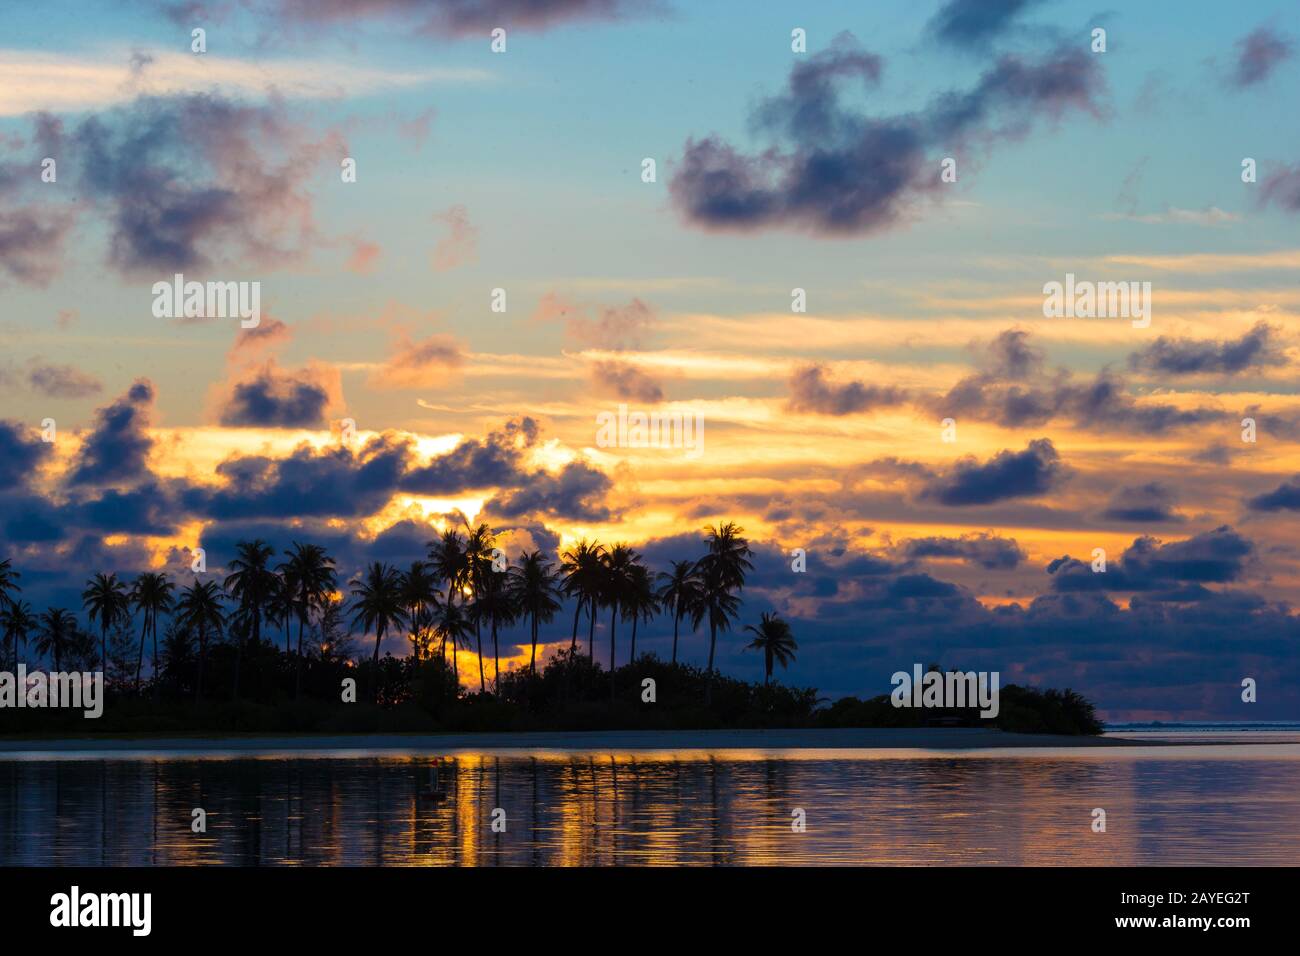 Sonnenuntergang am Meer, dunkle Silhouetten von Palmen und erstaunliche bewölktem Himmel Stockfoto